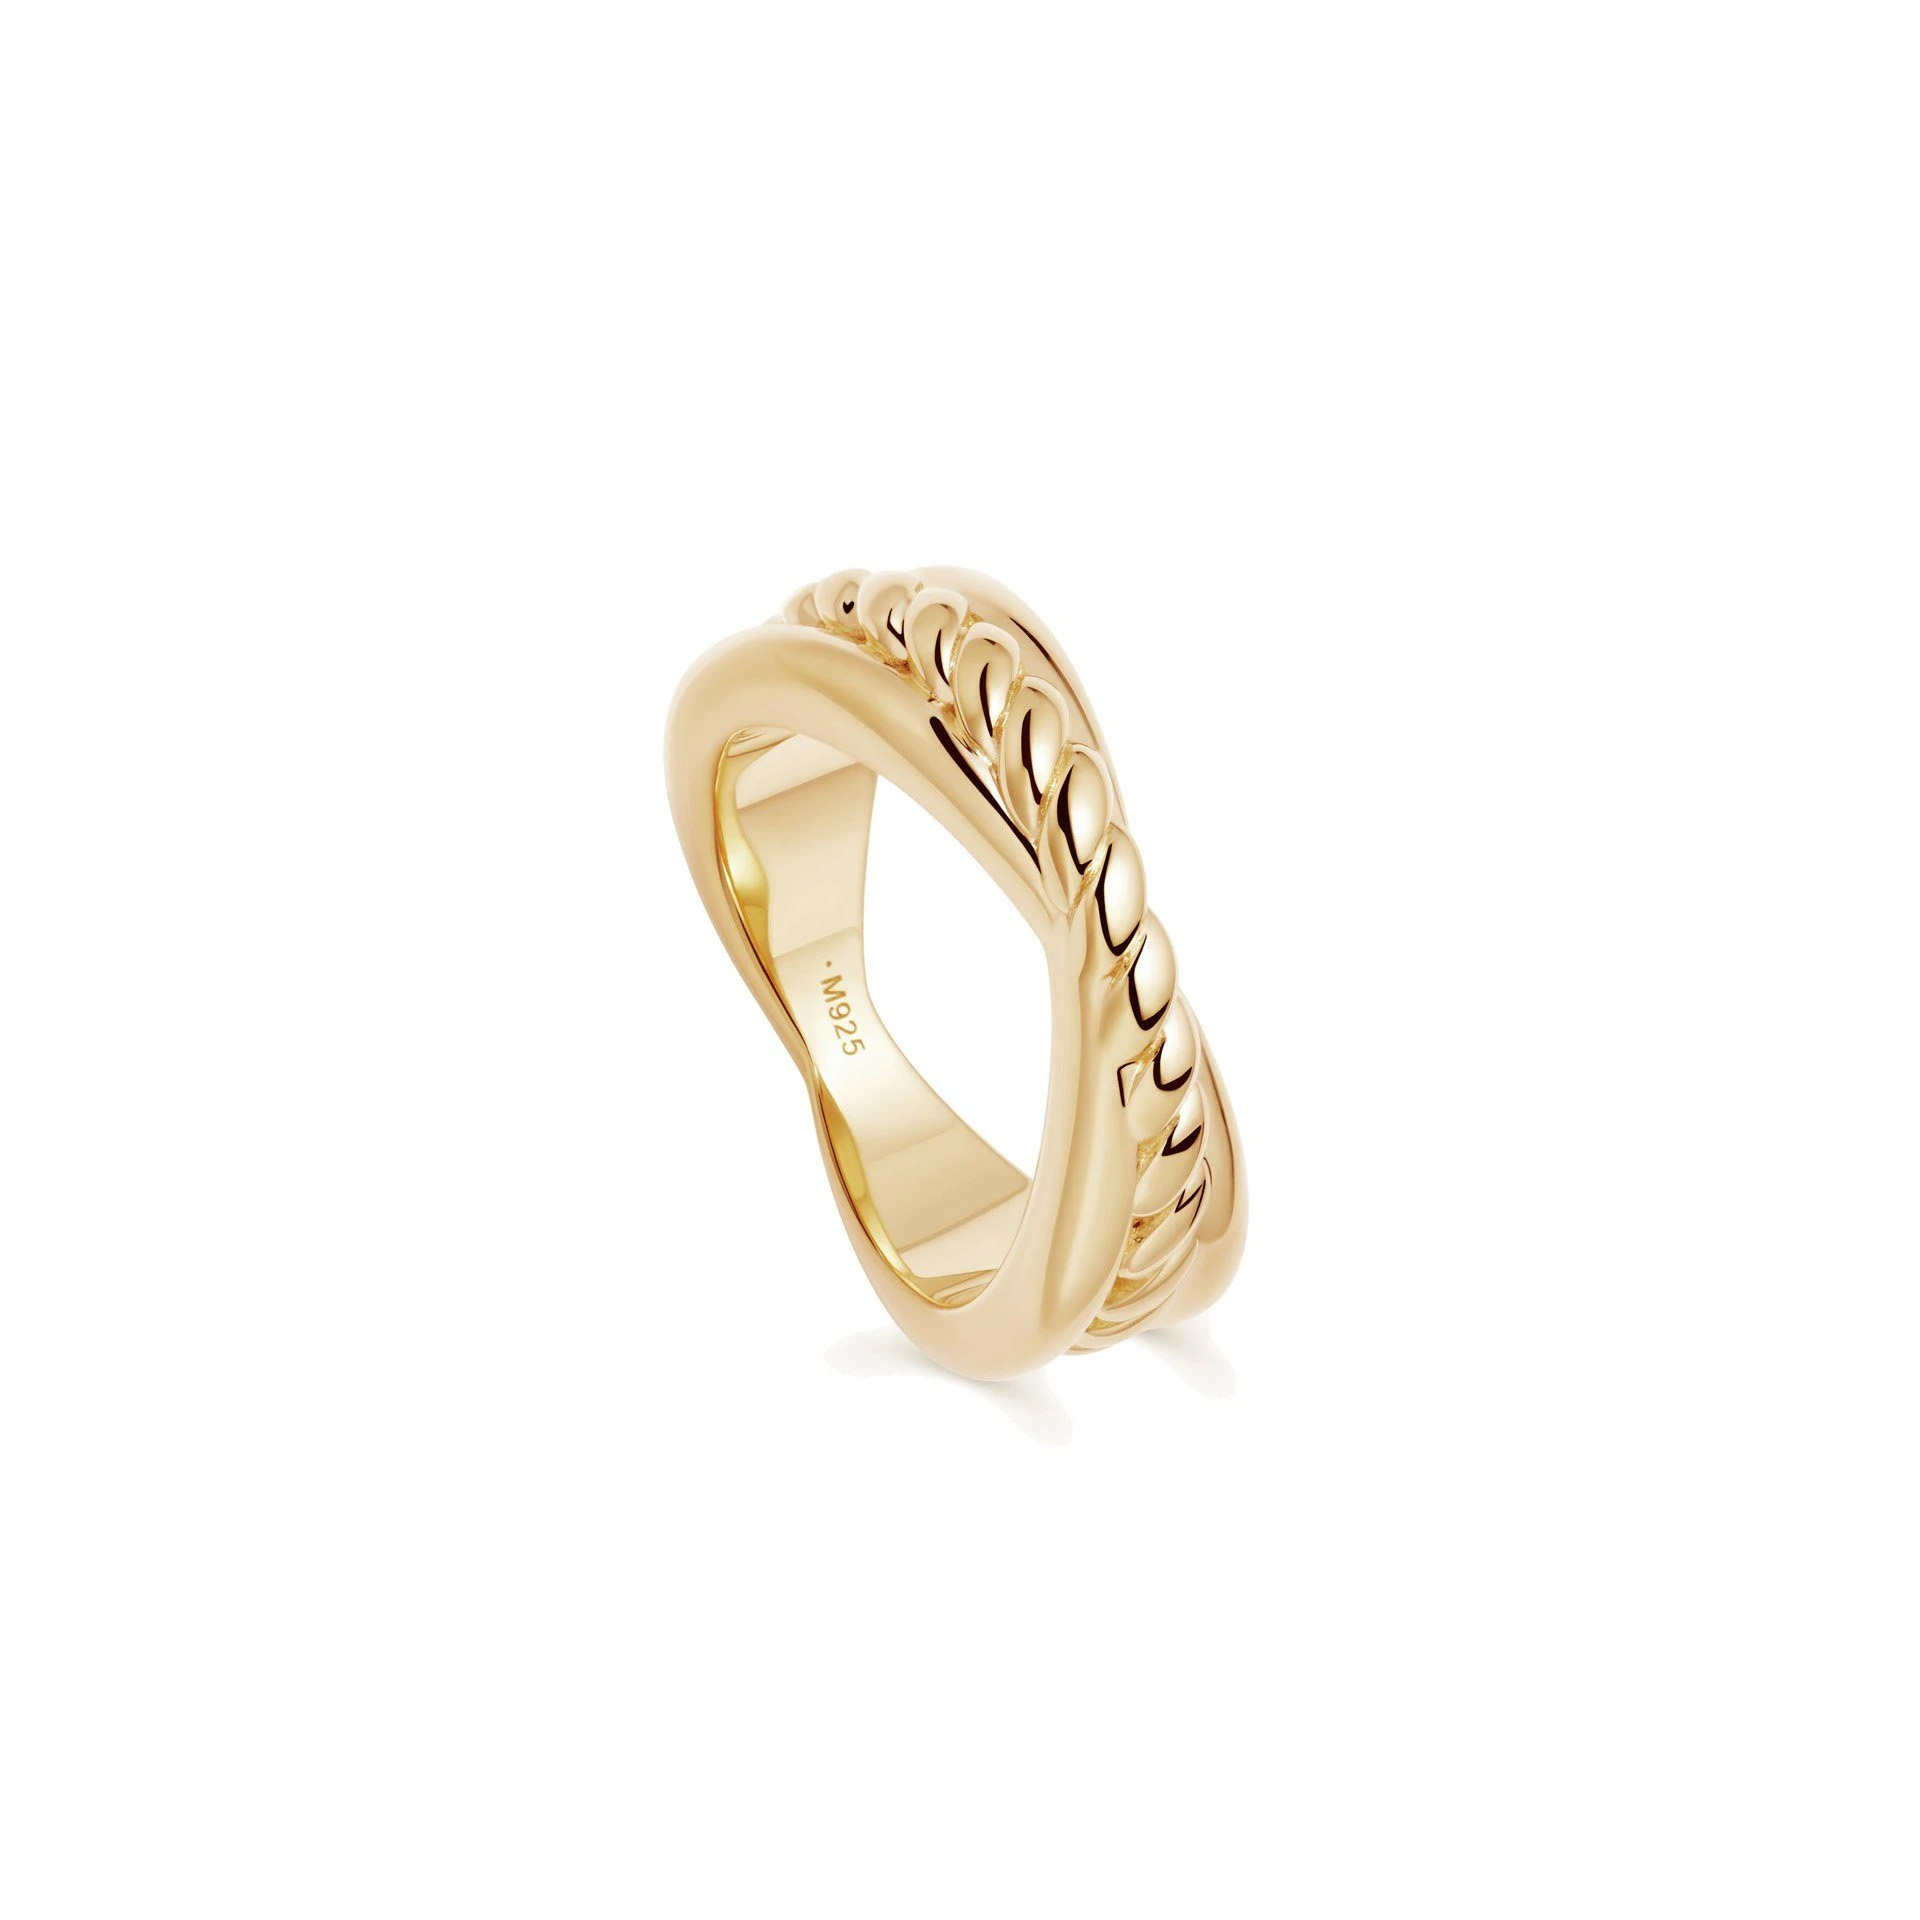 L'anello OEM all'ingrosso presenta un design a corda per gioielli OEM/ODM ed è realizzato in vermeil d'oro 18 ct